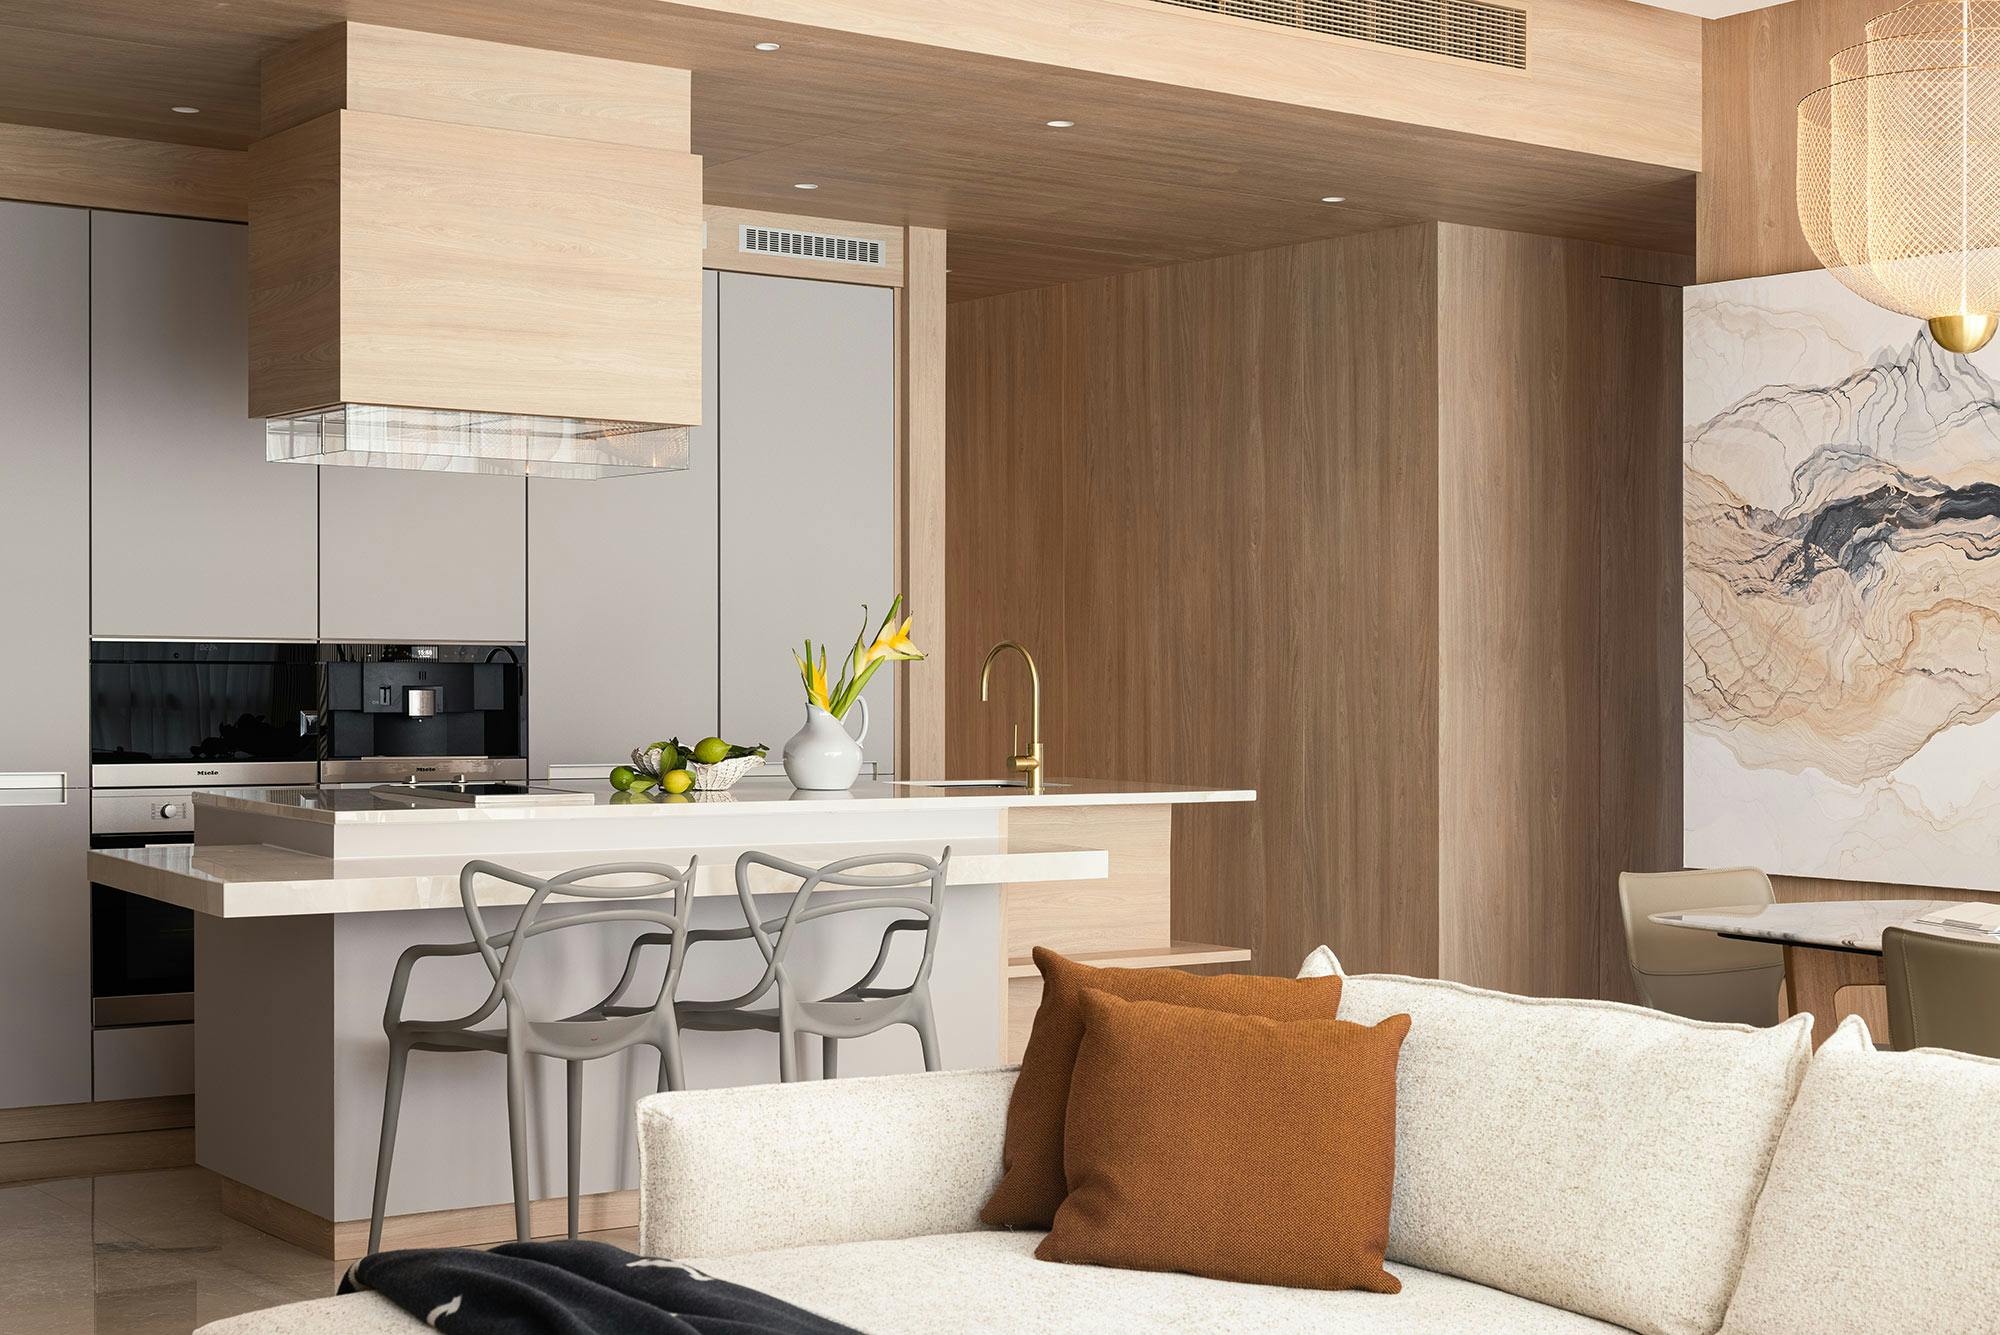 Numero immagine 47 della sezione corrente di DKTN and Silestone enhance the kitchen and bathroom design in a Tokyo home di Cosentino Italia